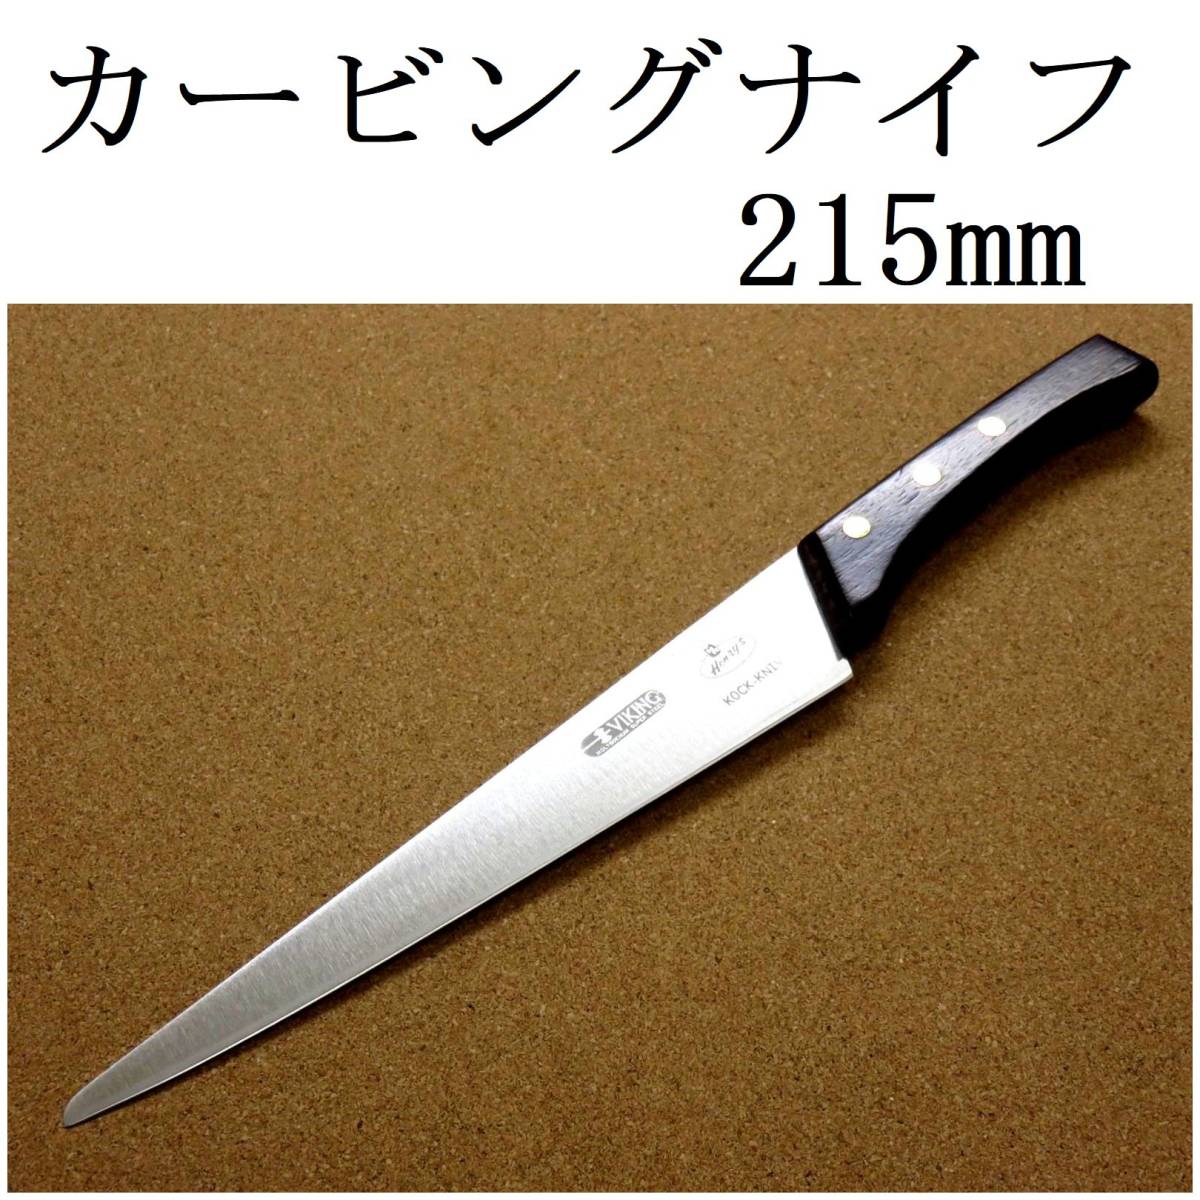 関の刃物 カービングナイフ 21.5cm (215mm) VIKING バイキング モリブデン バーベキュー 肉切包丁 両刃包丁 日本製 在庫処分品の画像1